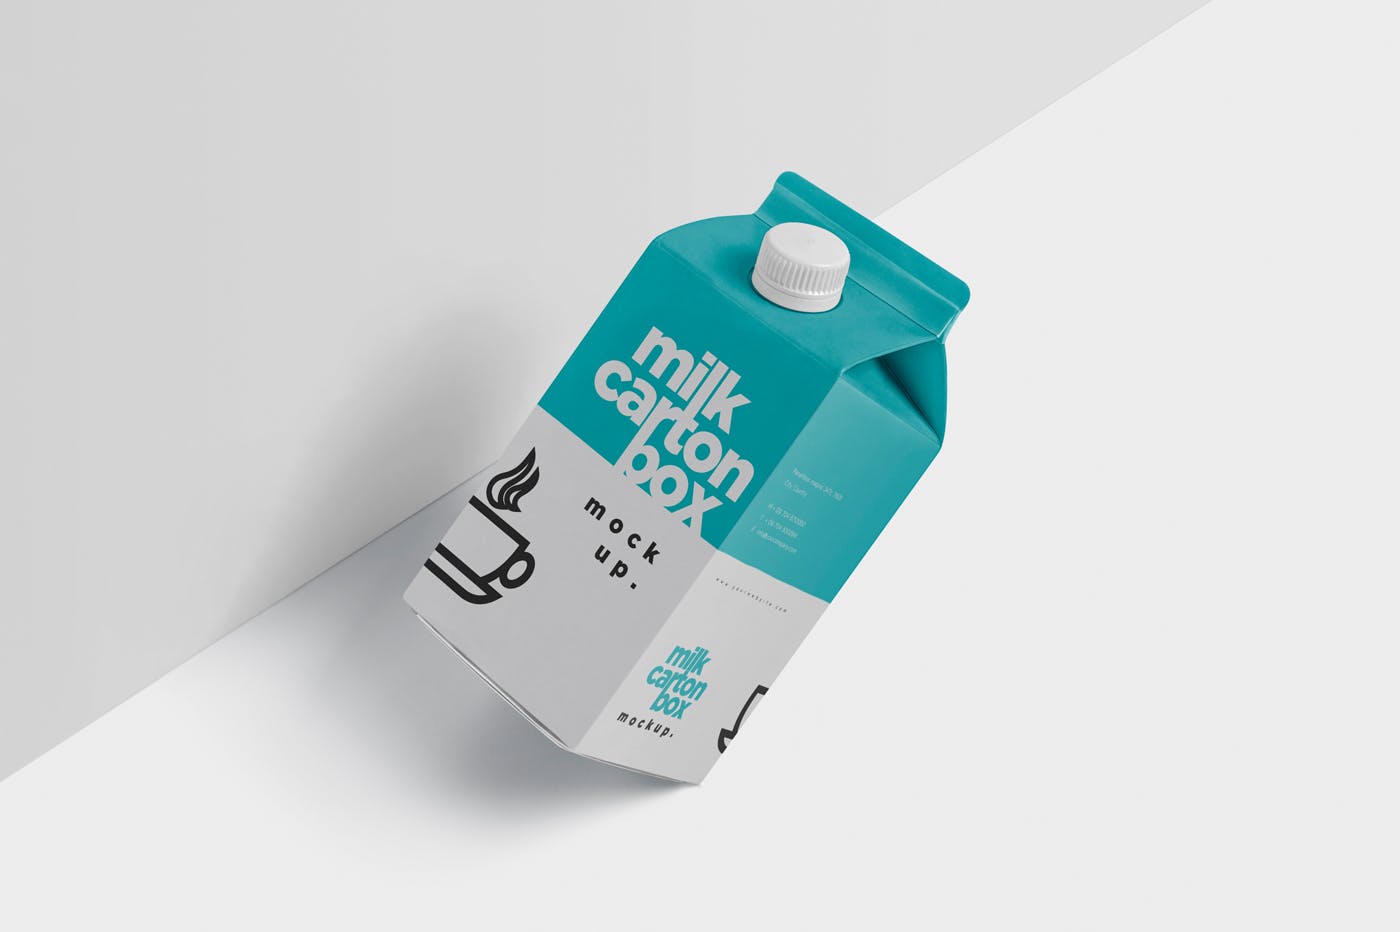 果汁/牛奶饮料纸盒包装效果图样机 Juice – Milk Mockup in 500ml Carton Box插图(2)